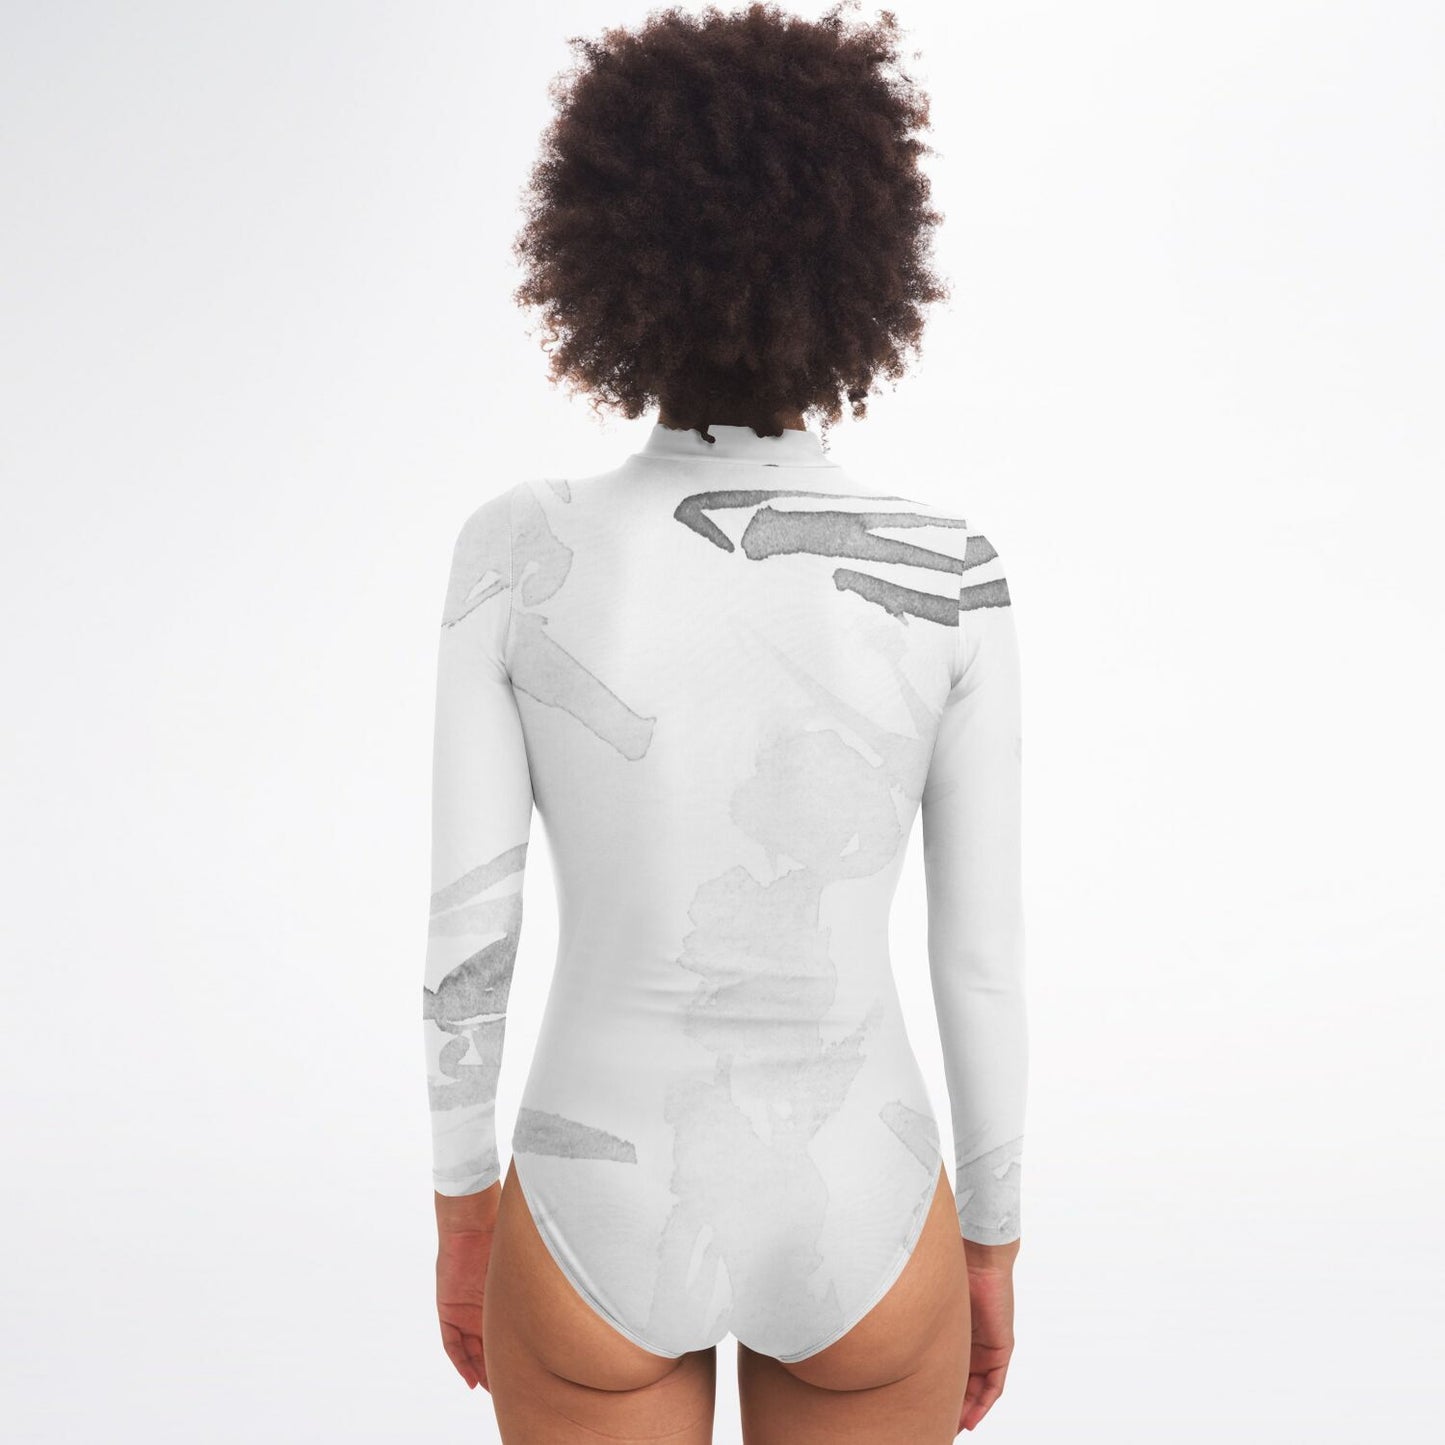 Women's All Over Print Long Sleeve Bodysuit